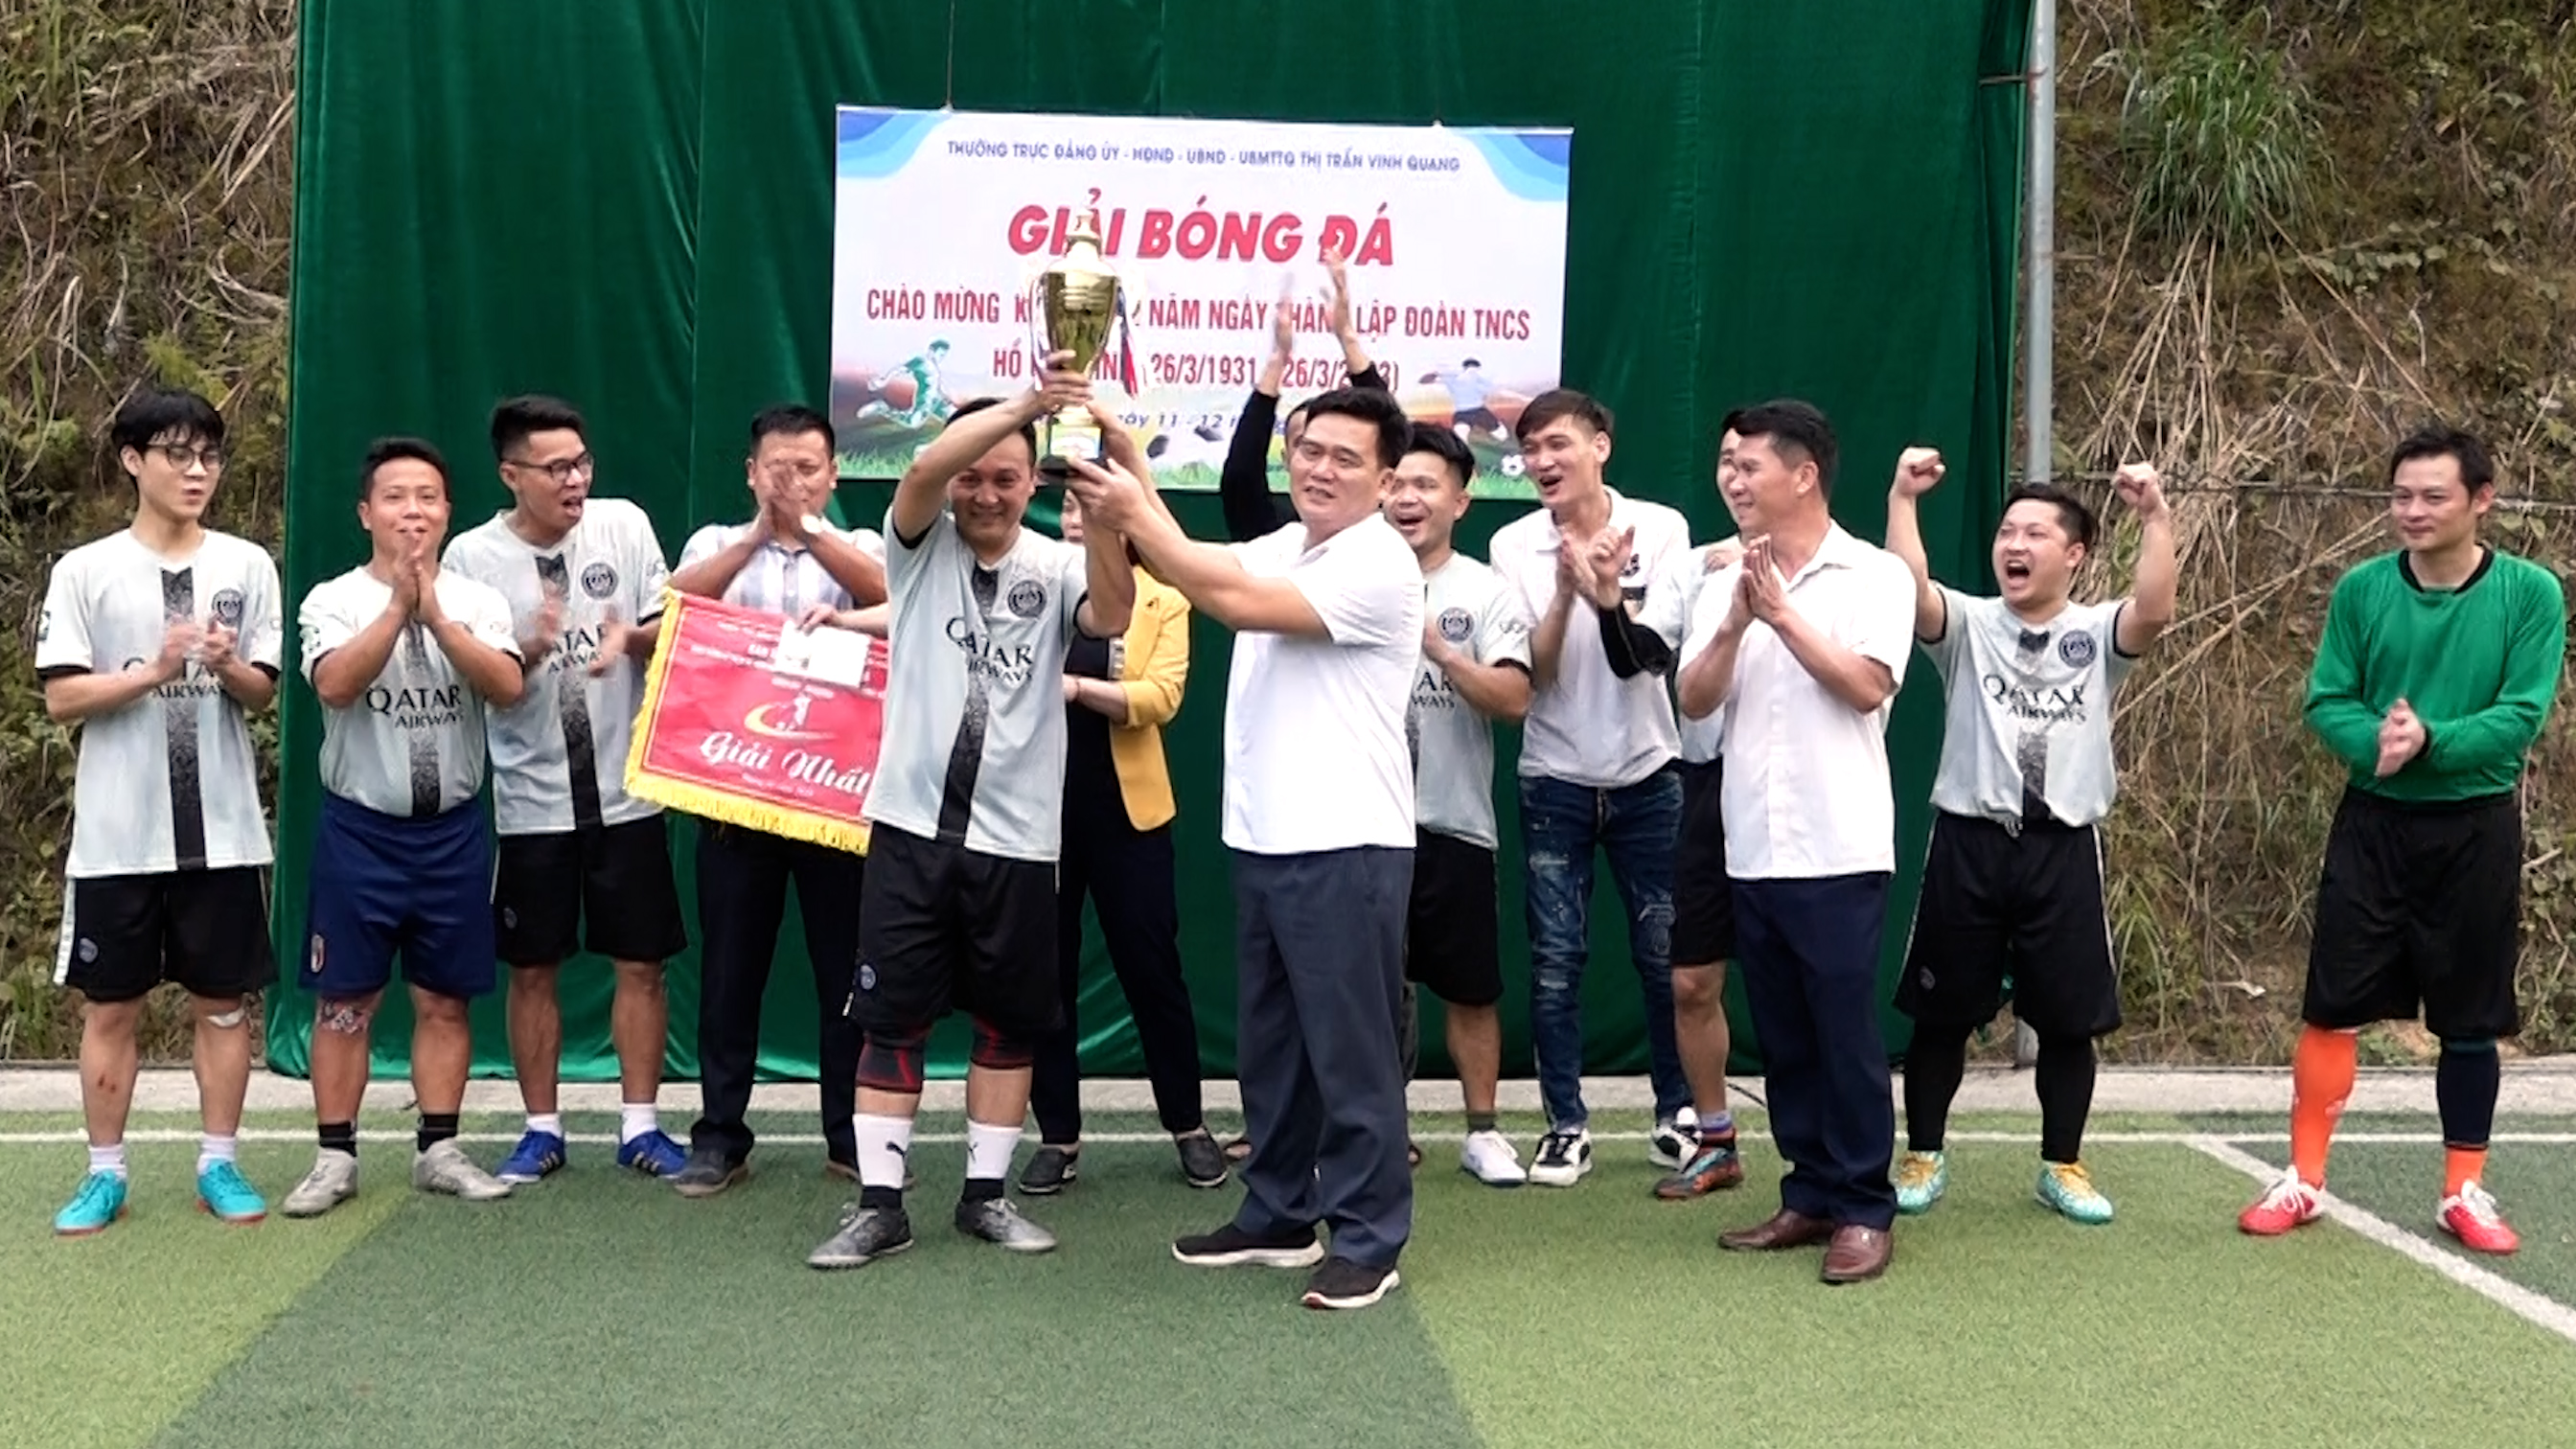 Ghi nhận giải bóng đá Nam chào mừng kỷ niệm ngày thành lập Đoàn 26/3.